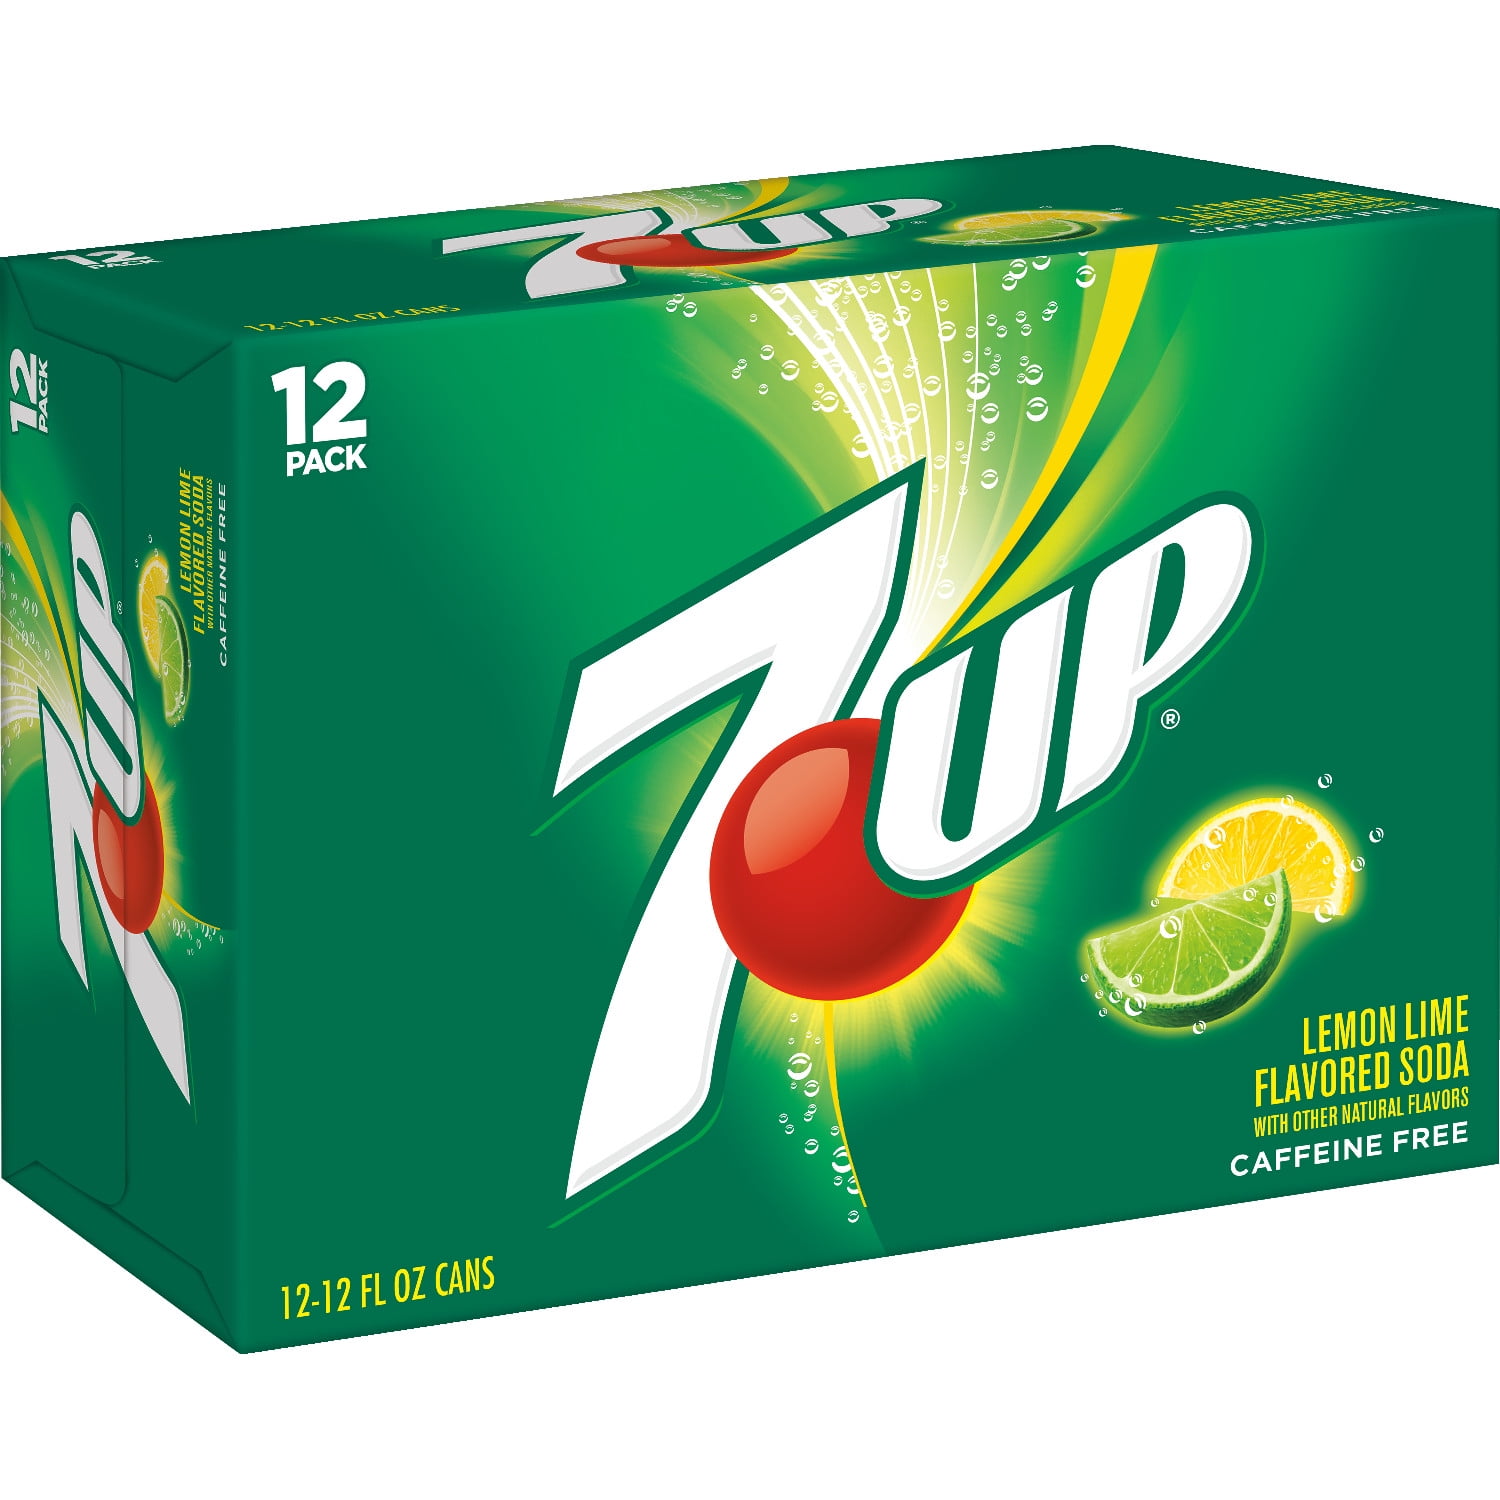 7UP Lemon Lime Soda Pop, 12 fl oz cans, 12 pack 